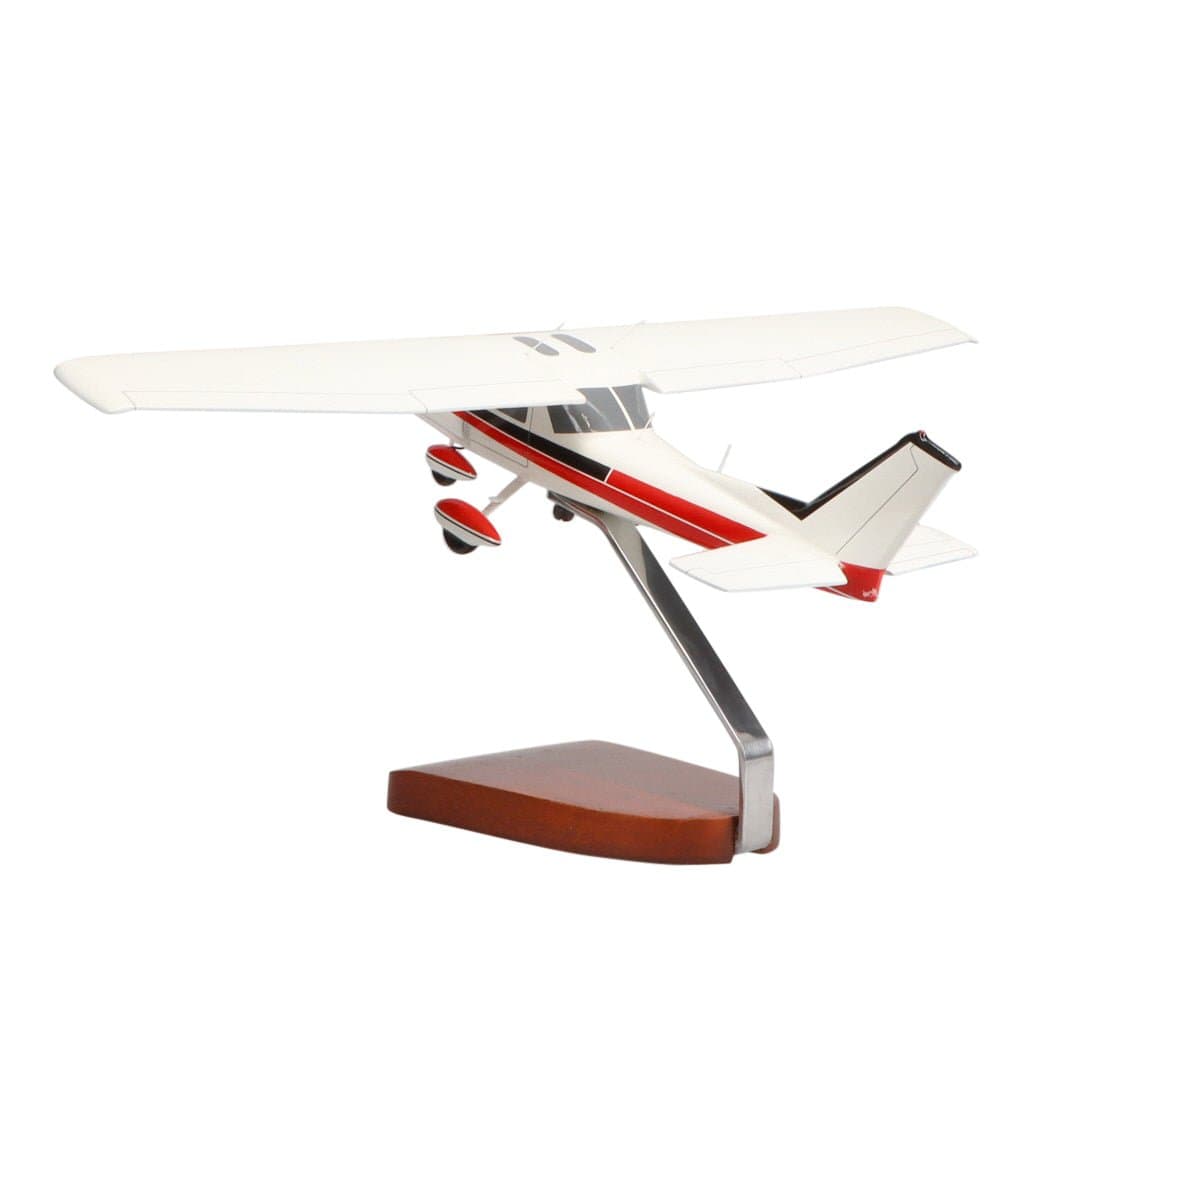 Cessna® 150 / 152 Large Mahogany Model